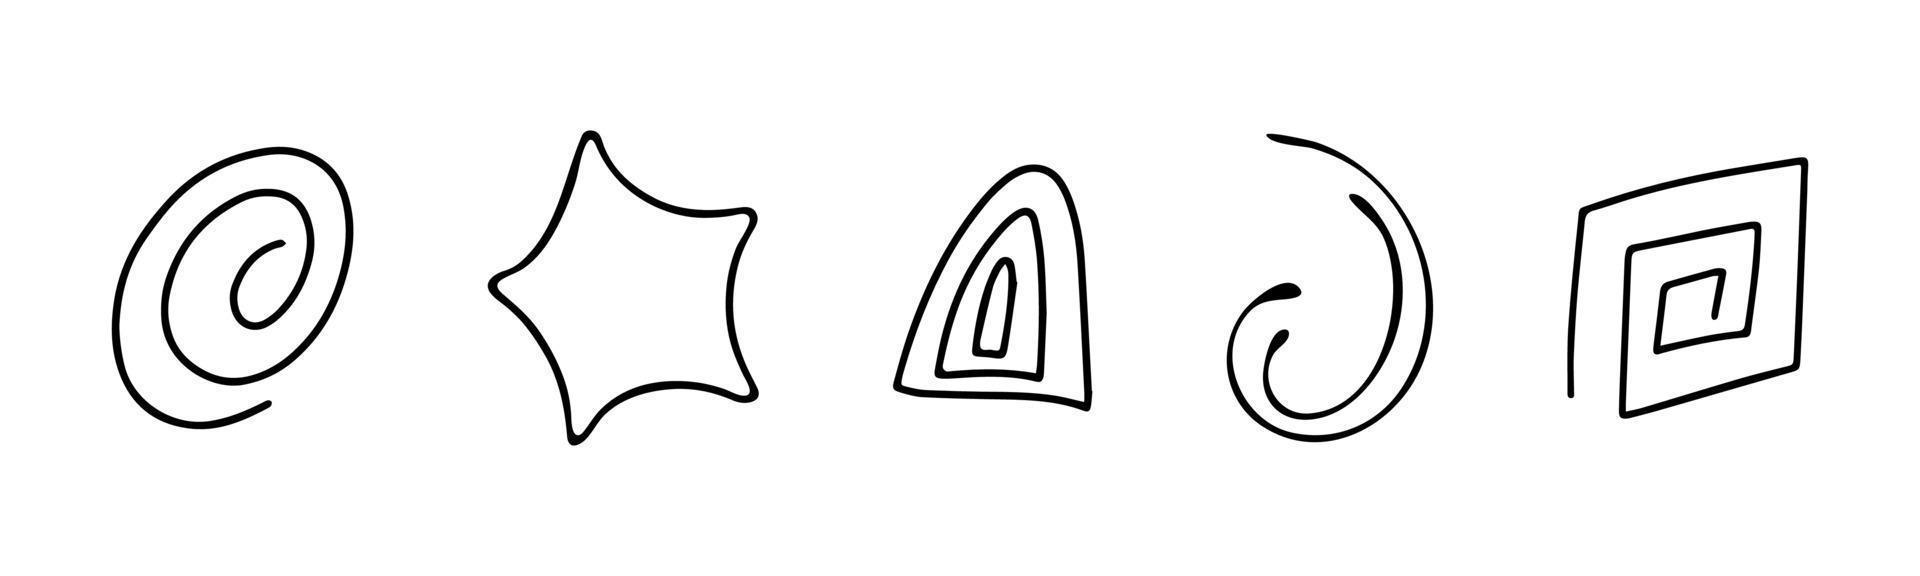 abstrakte handgezeichnete lineare formen für design festgelegt. Schnörkel, Locken. Gekritzelelemente eingestellt, Vektorillustration vektor